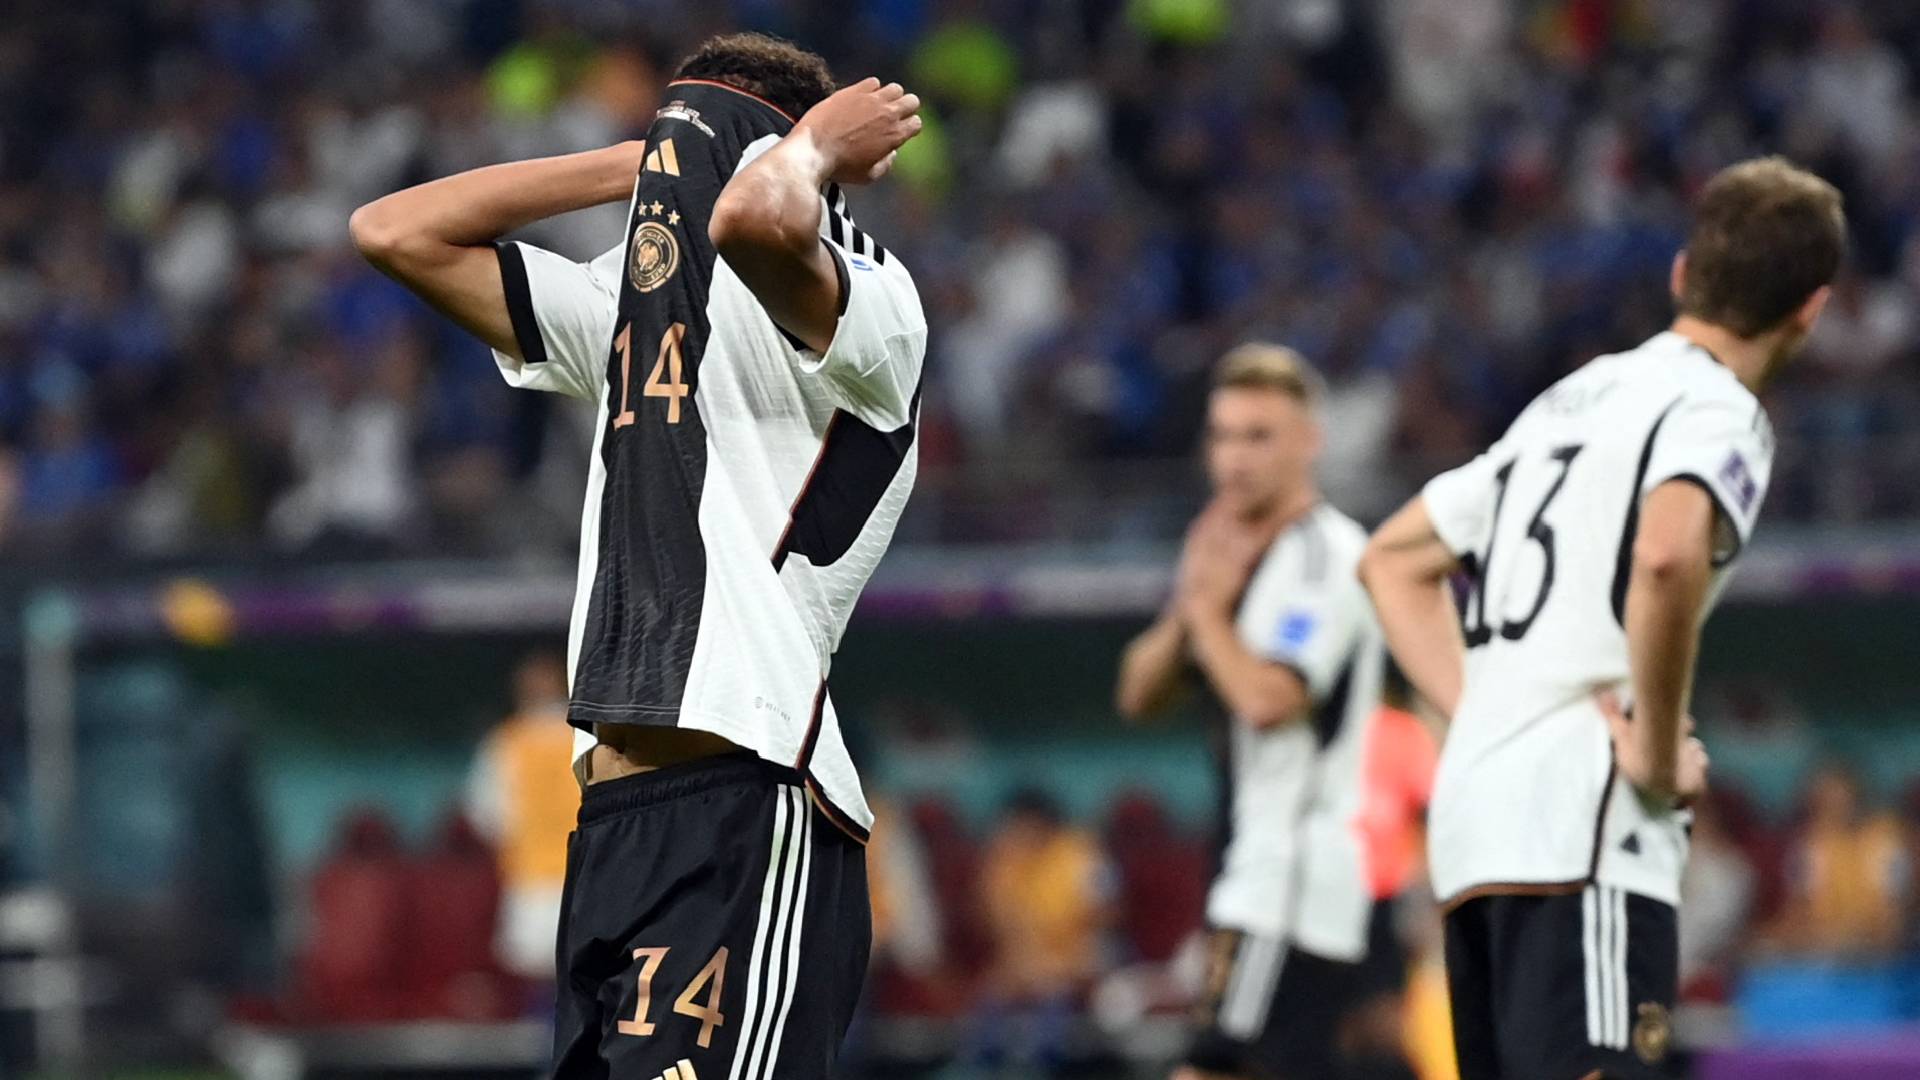 Alemania fuera del mundial tras no alcanzar los puntos con Costa Rica y cae en primera ronda